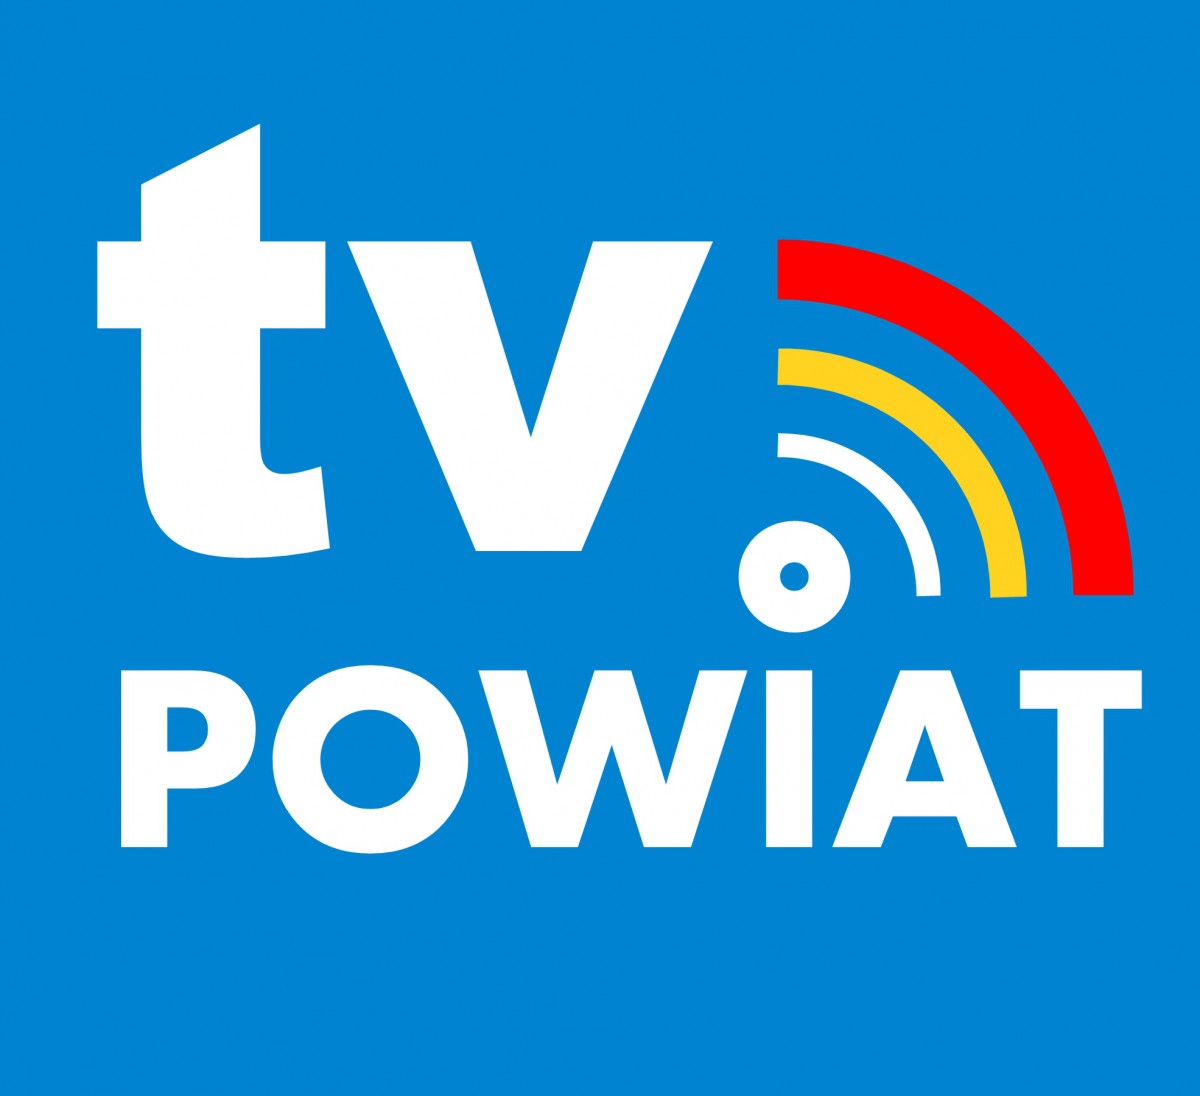 Na niebieskim tle biały napis TV POWIAT oraz żółta i czerwona kreska